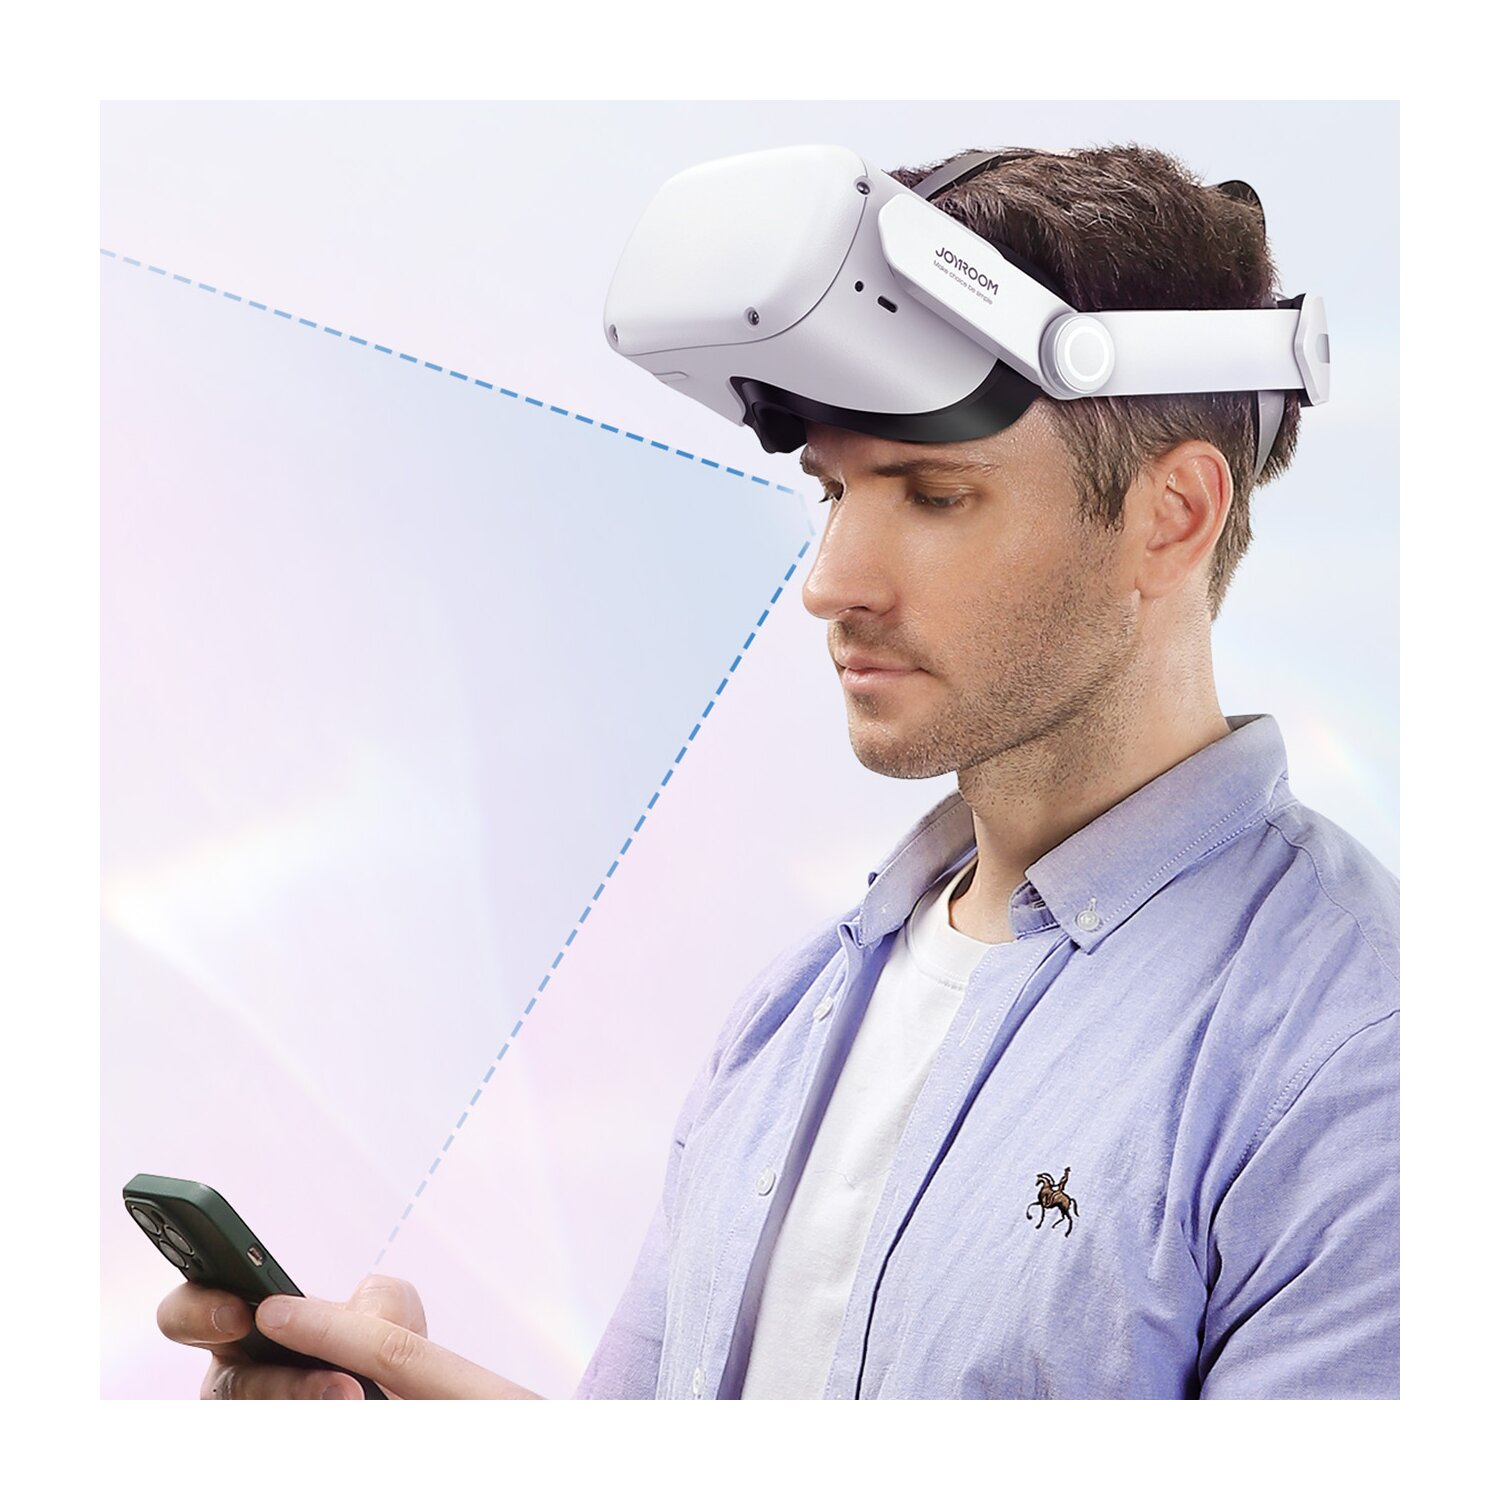 JOYROOM Strap Oculus Quest VR-Brillen-Halterung, Weiß 2